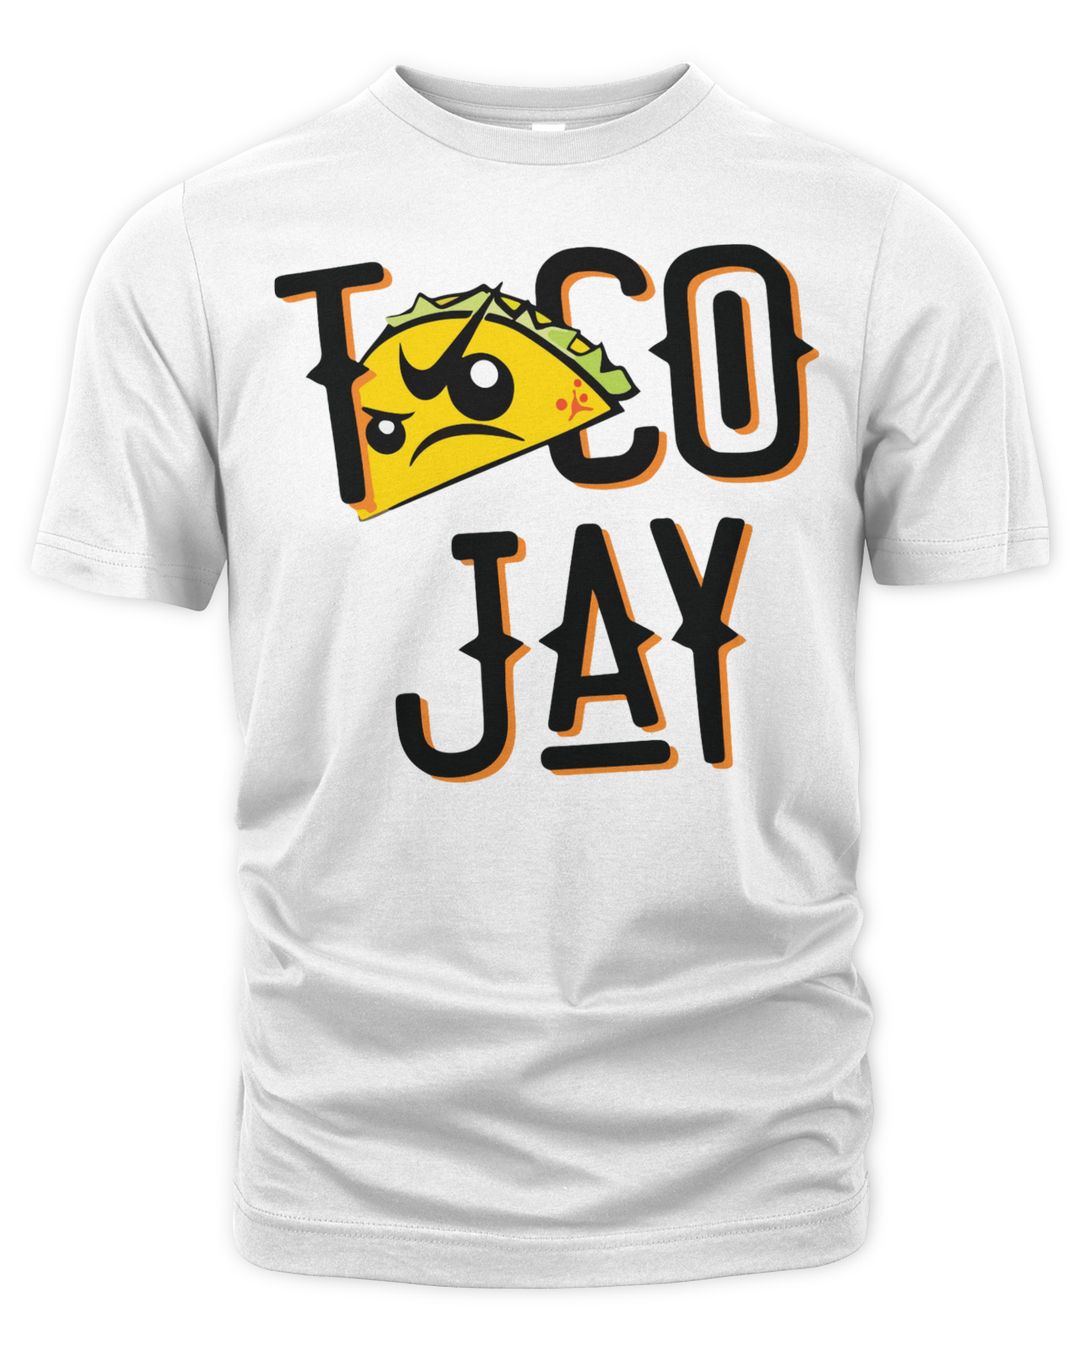 Taco Jay Shirt